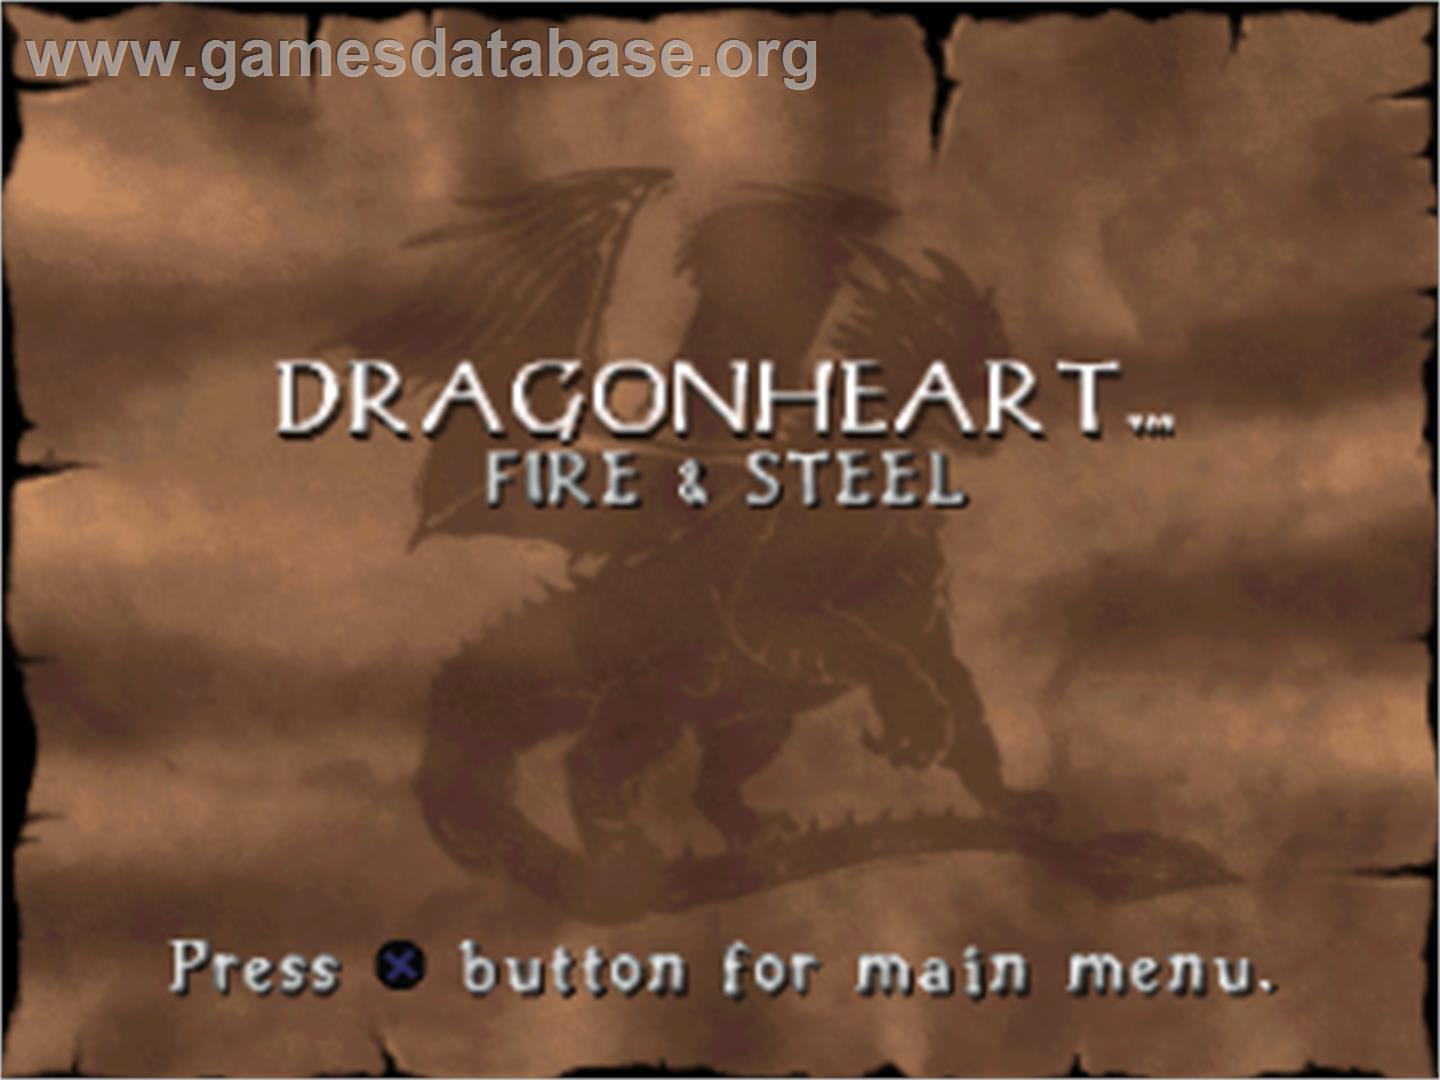 DragonHeart: Fire & Steel - Sony Playstation - Artwork - Title Screen